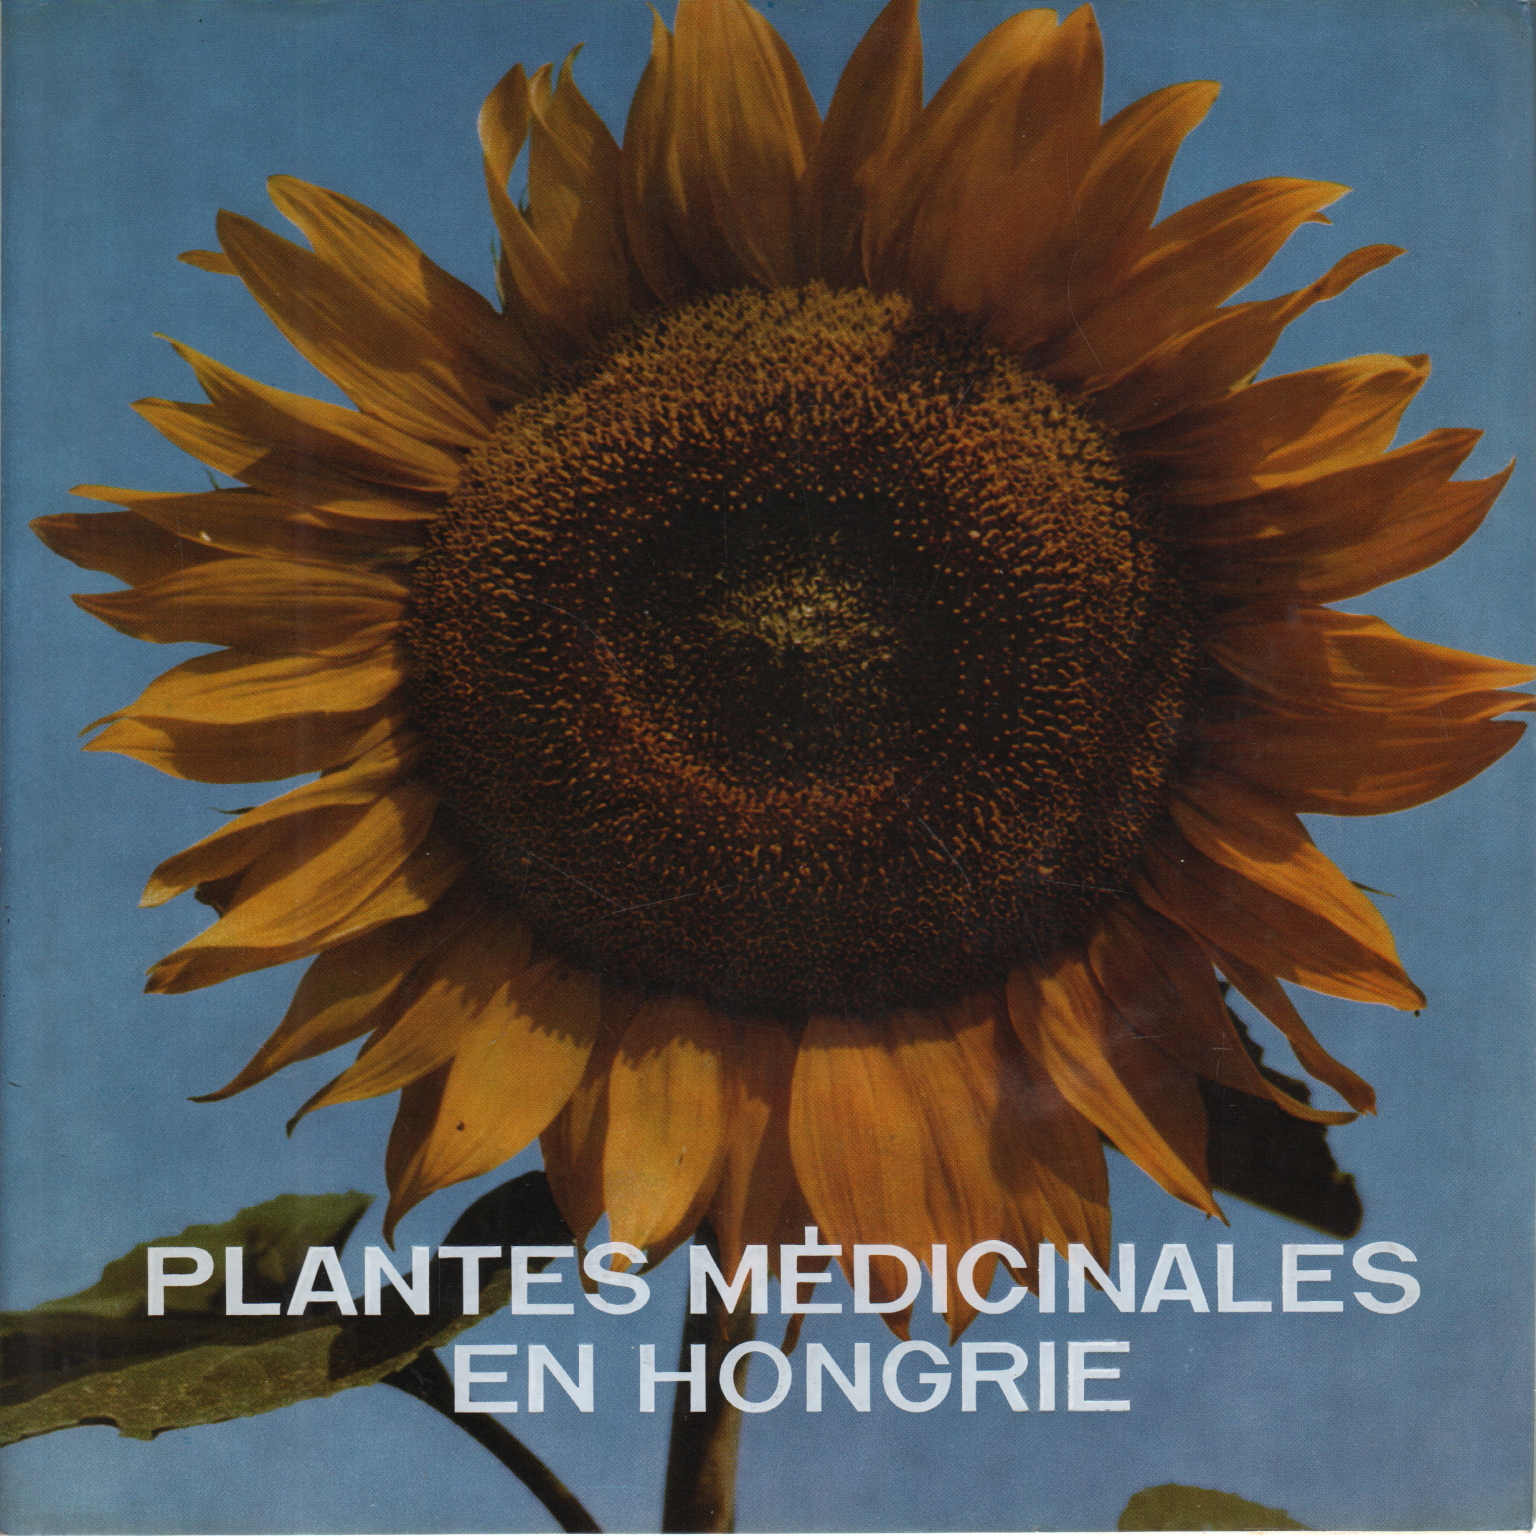 Plantes médicinales en Hongrie, Edit Pethes